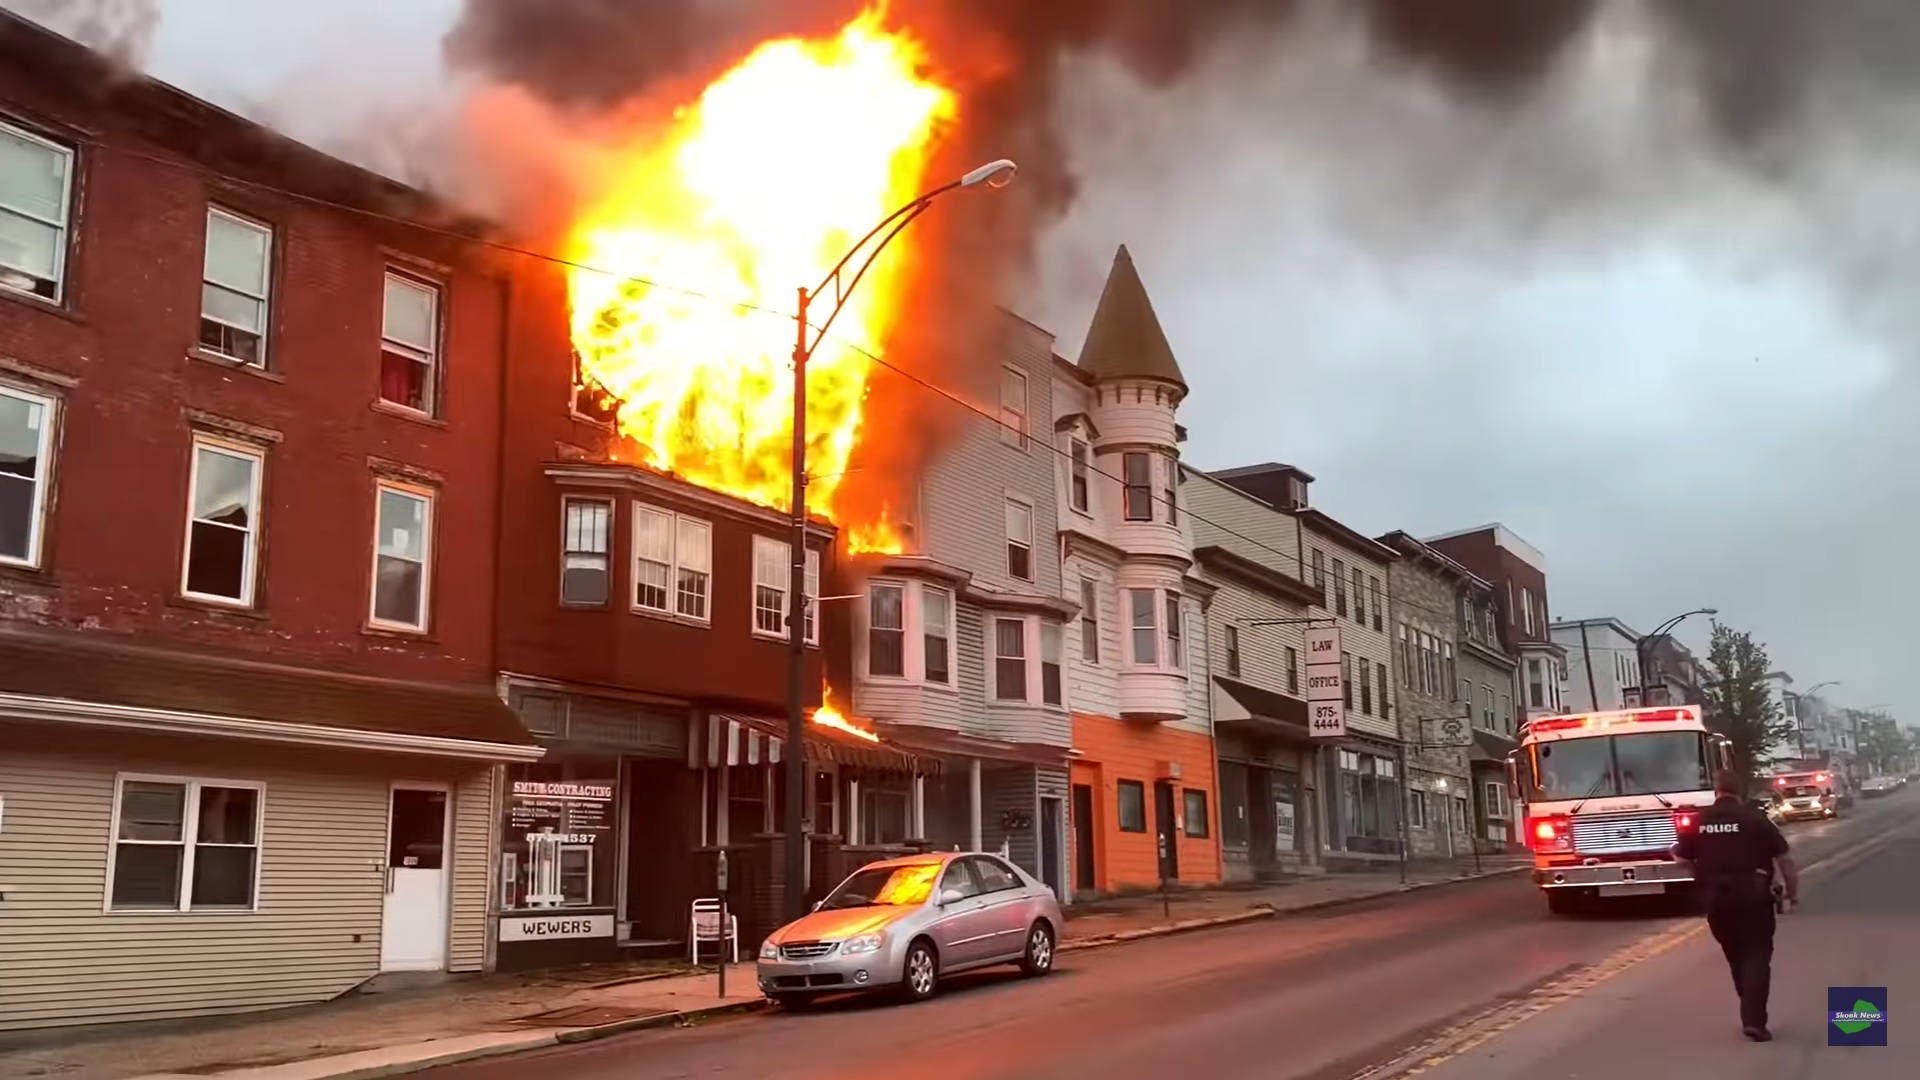 Pre-arrival video: Two-alarm fire in Pennsylvania